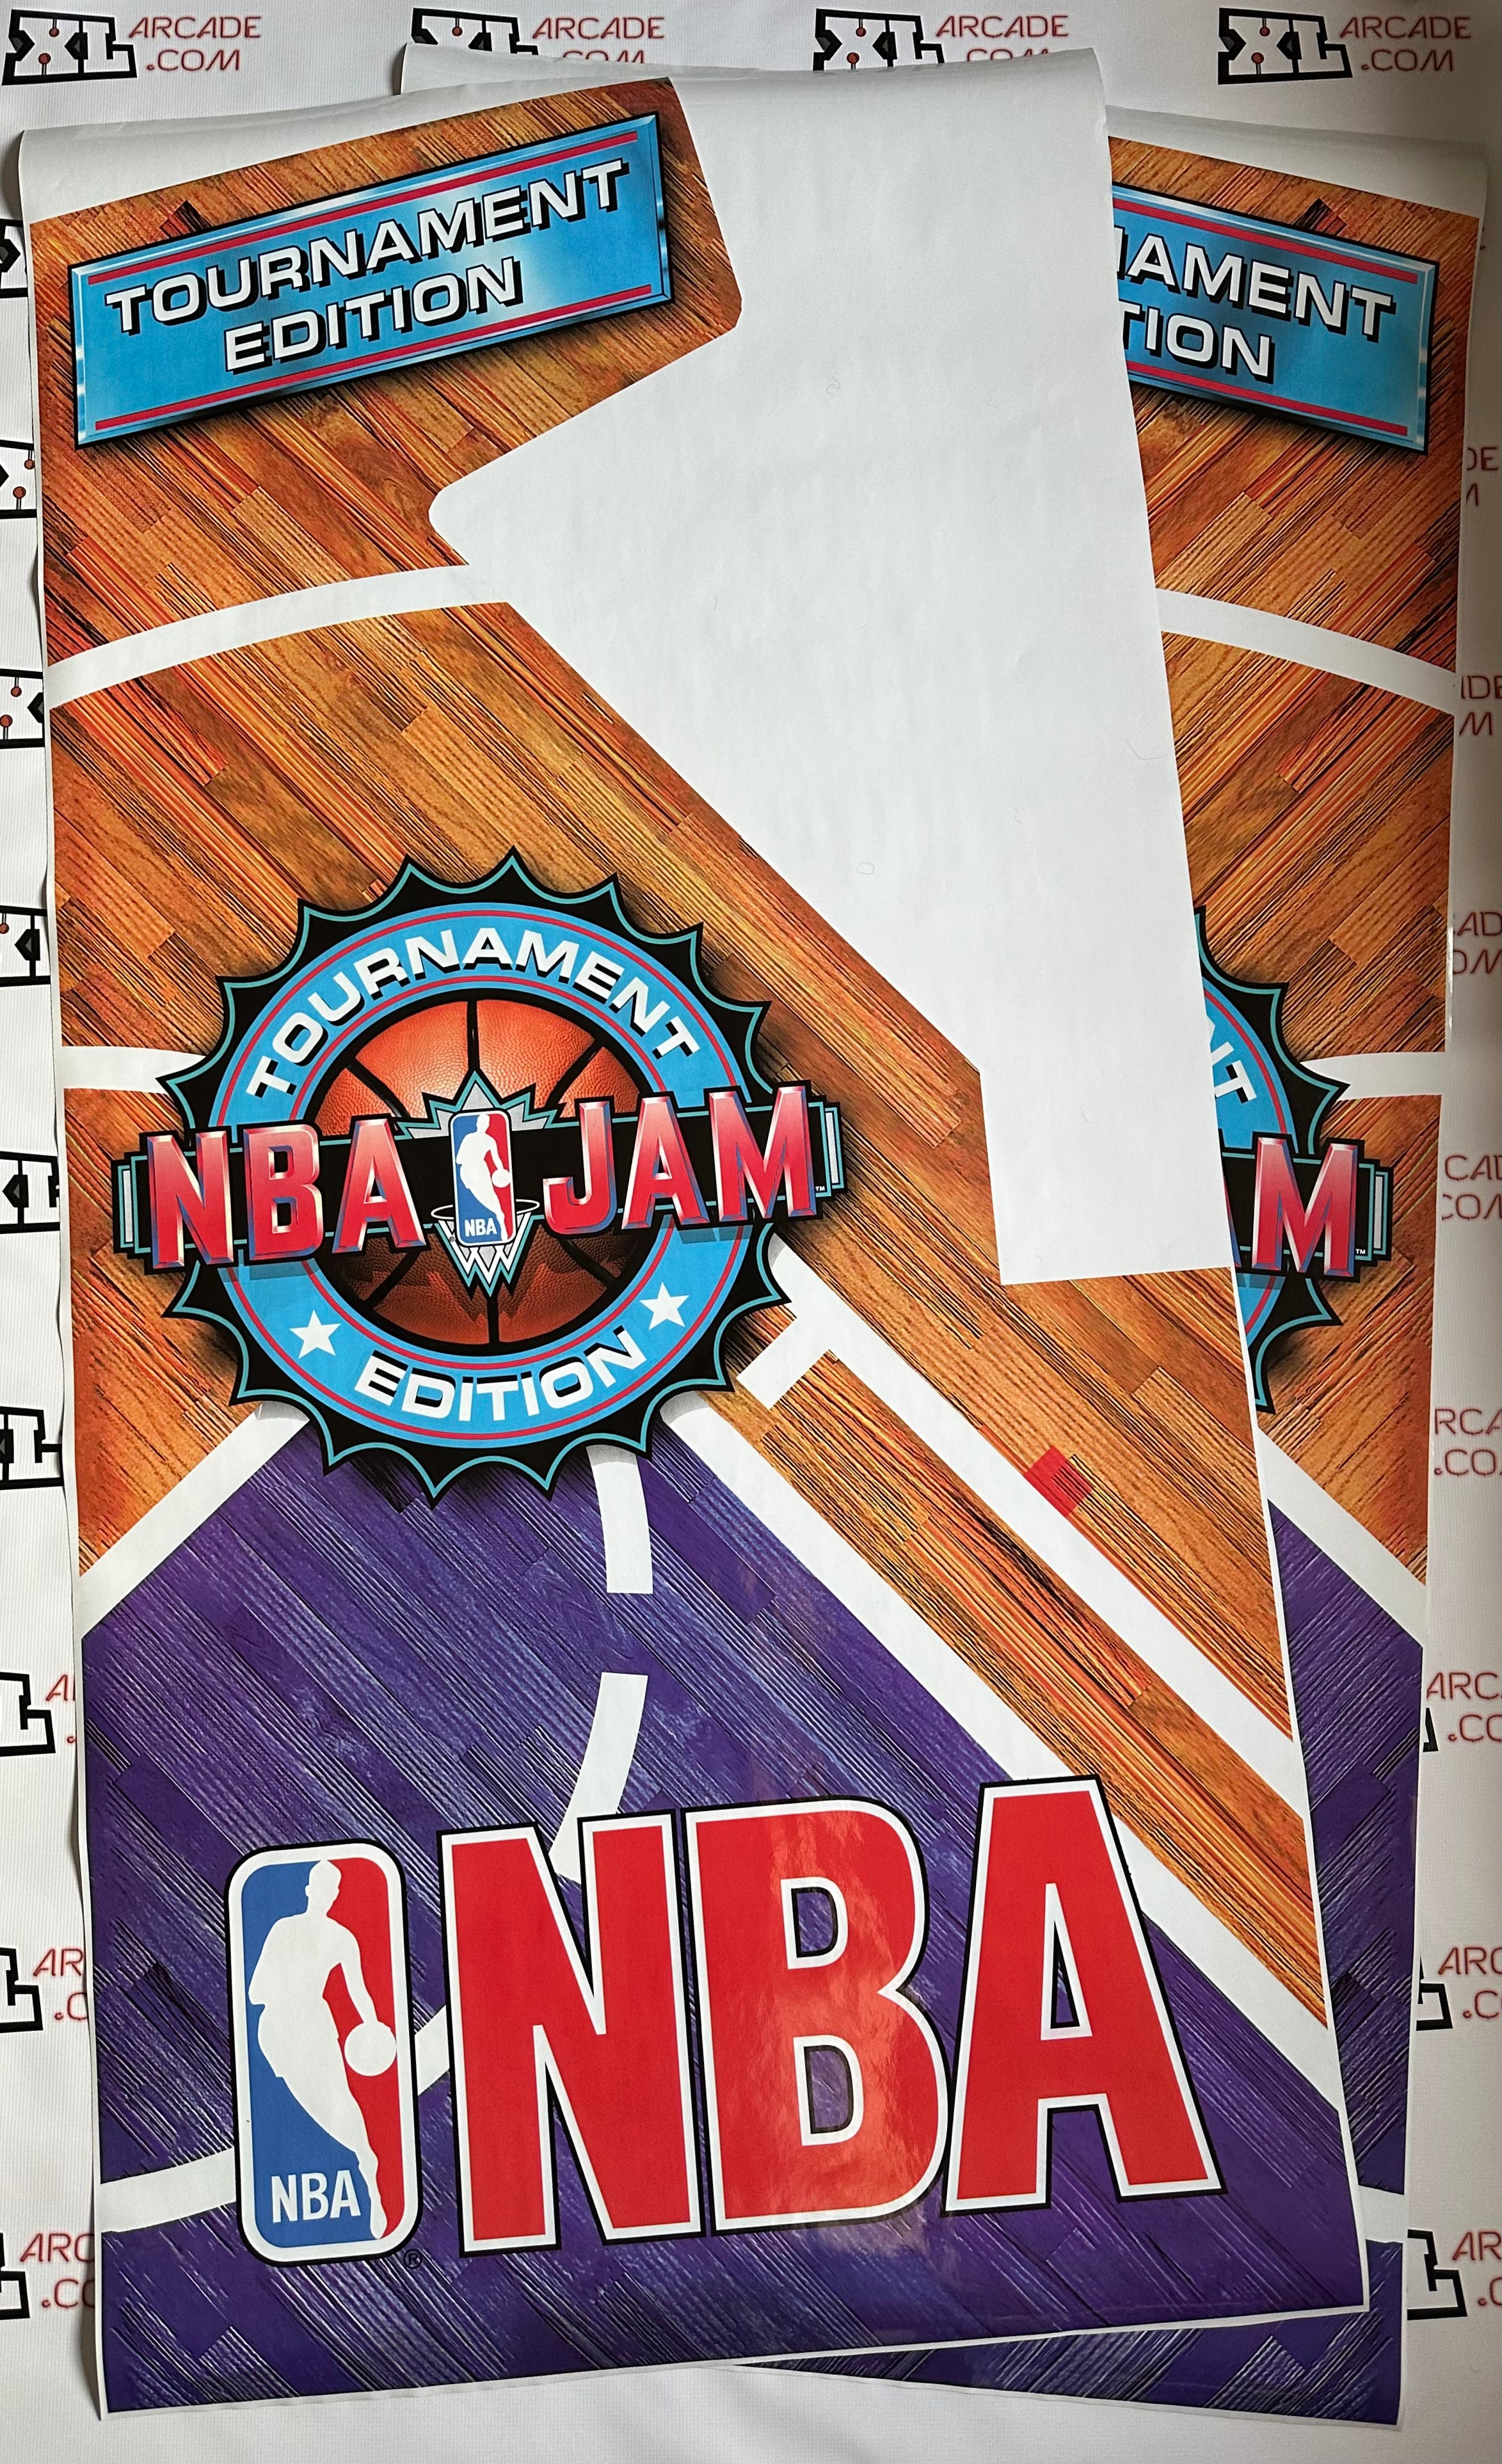 Arte lateral de la edición del torneo NBA Jam